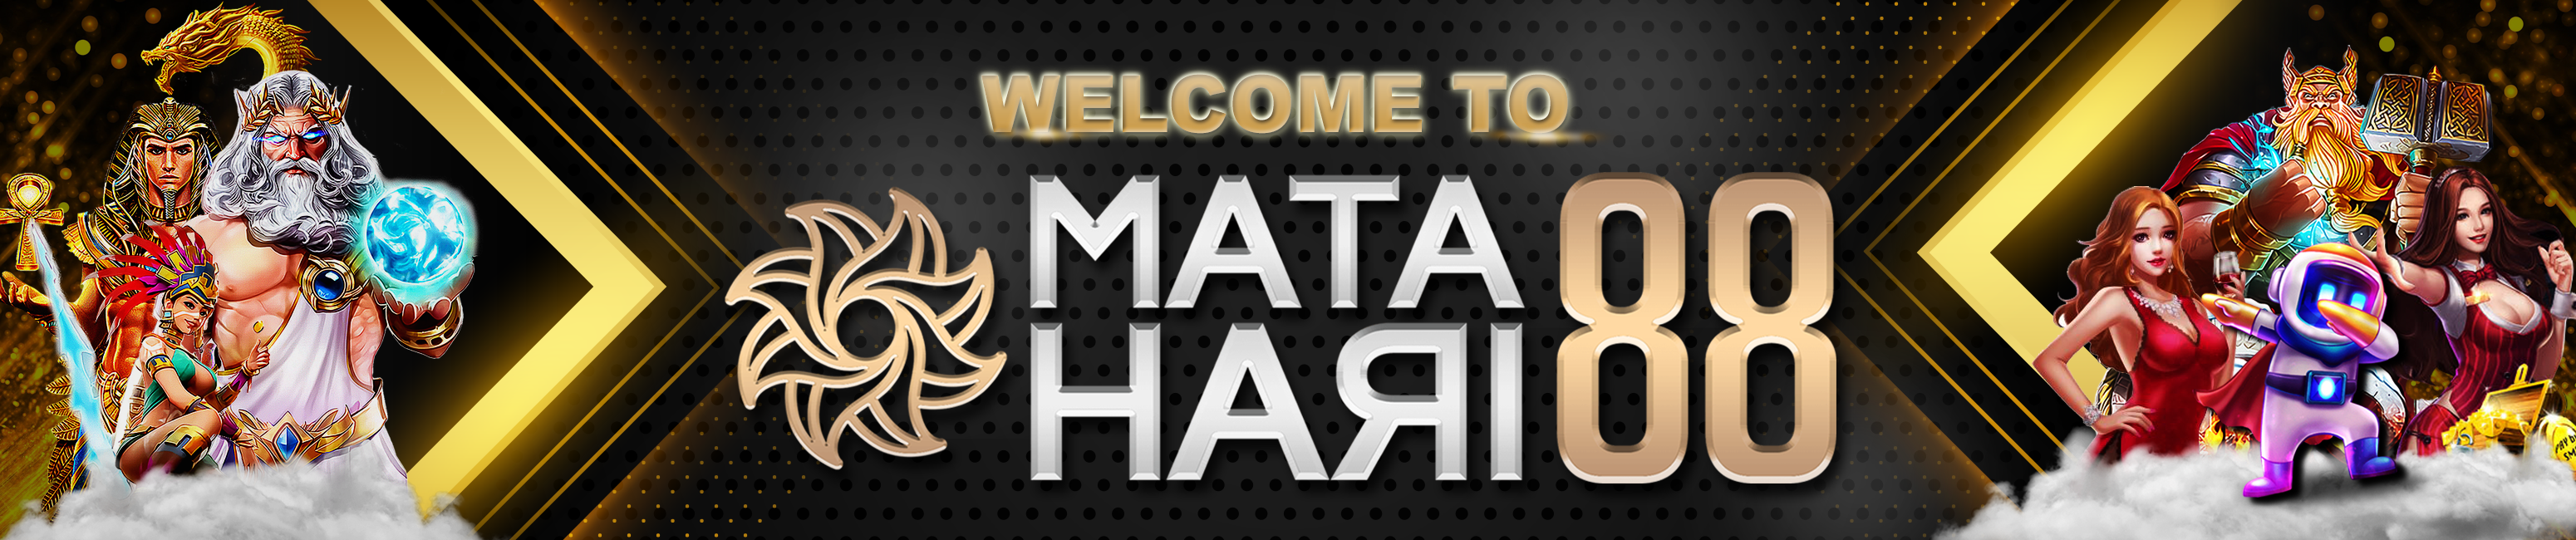 WELCOME TO MATAHARI88 